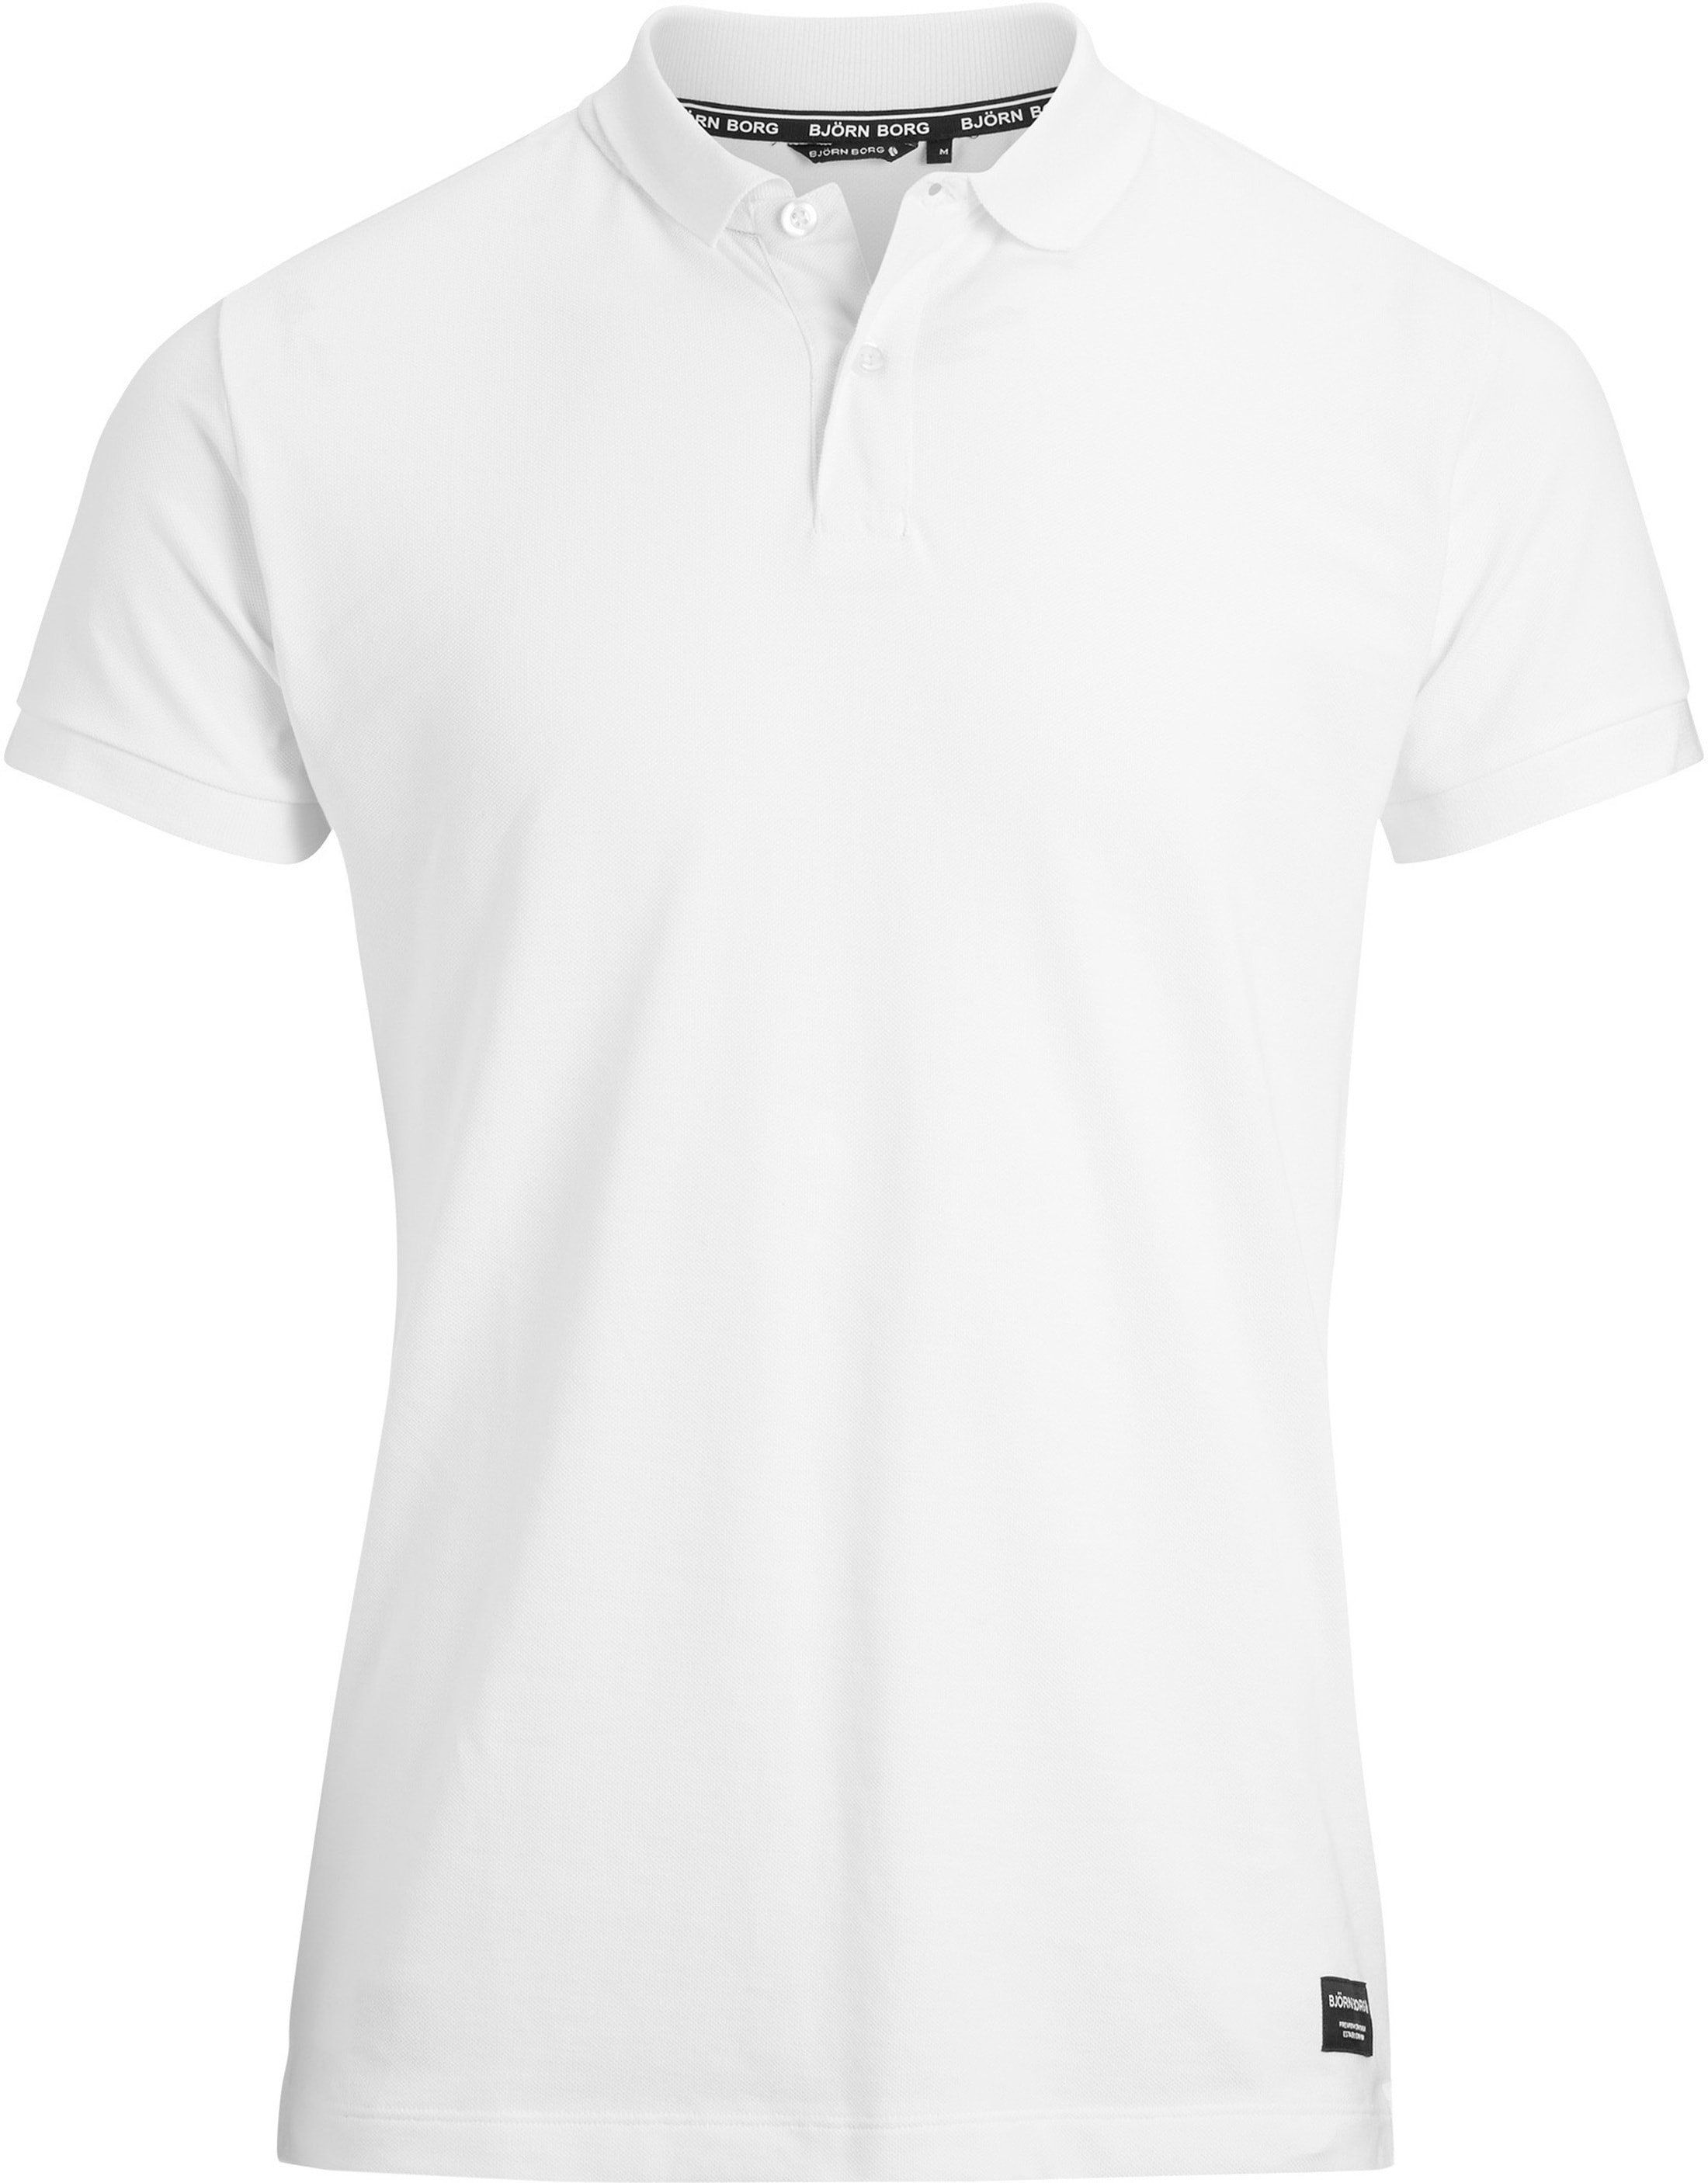 Bjorn Borg Poloshirt Brilliant White size S